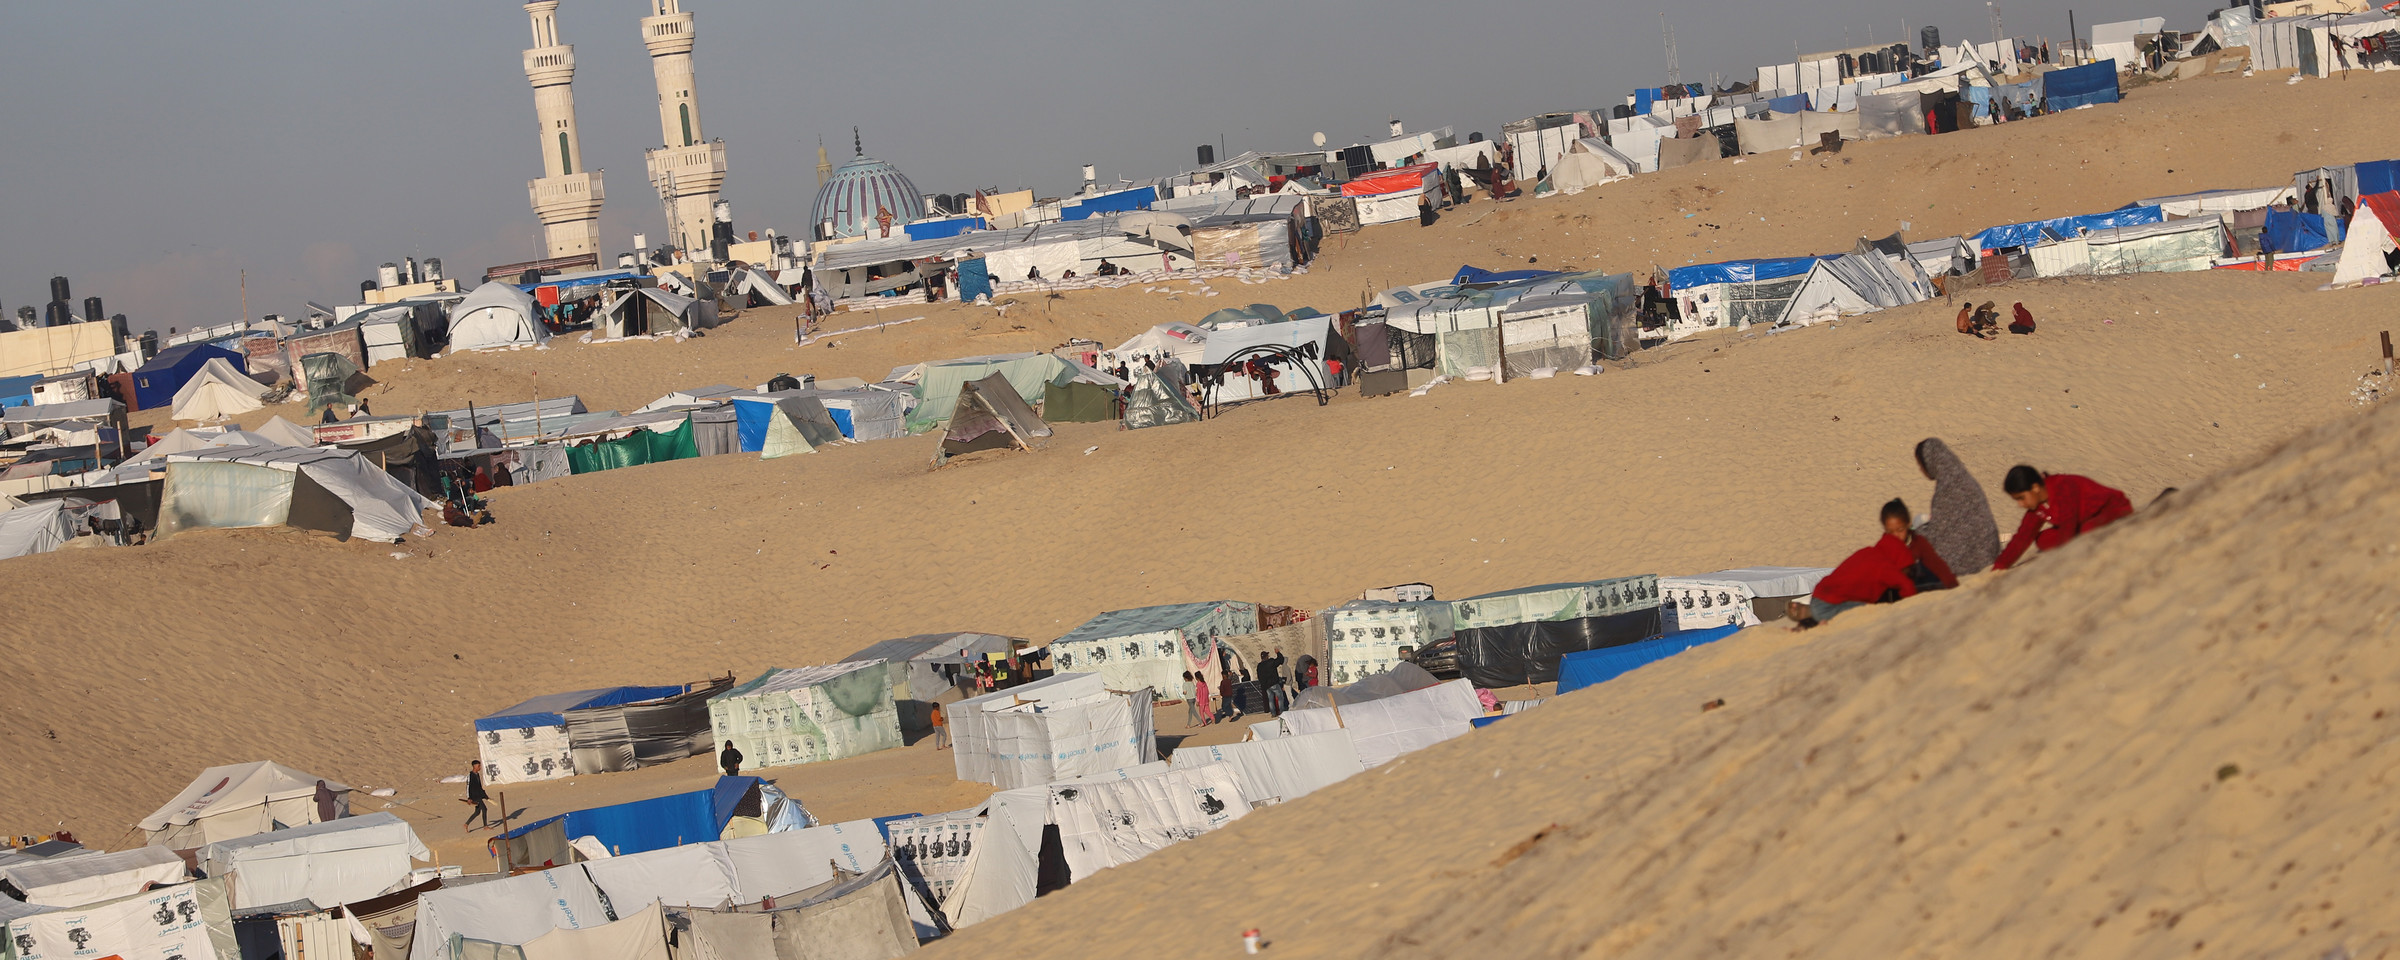 A daytime view of tents erected along a sandy desert hillside